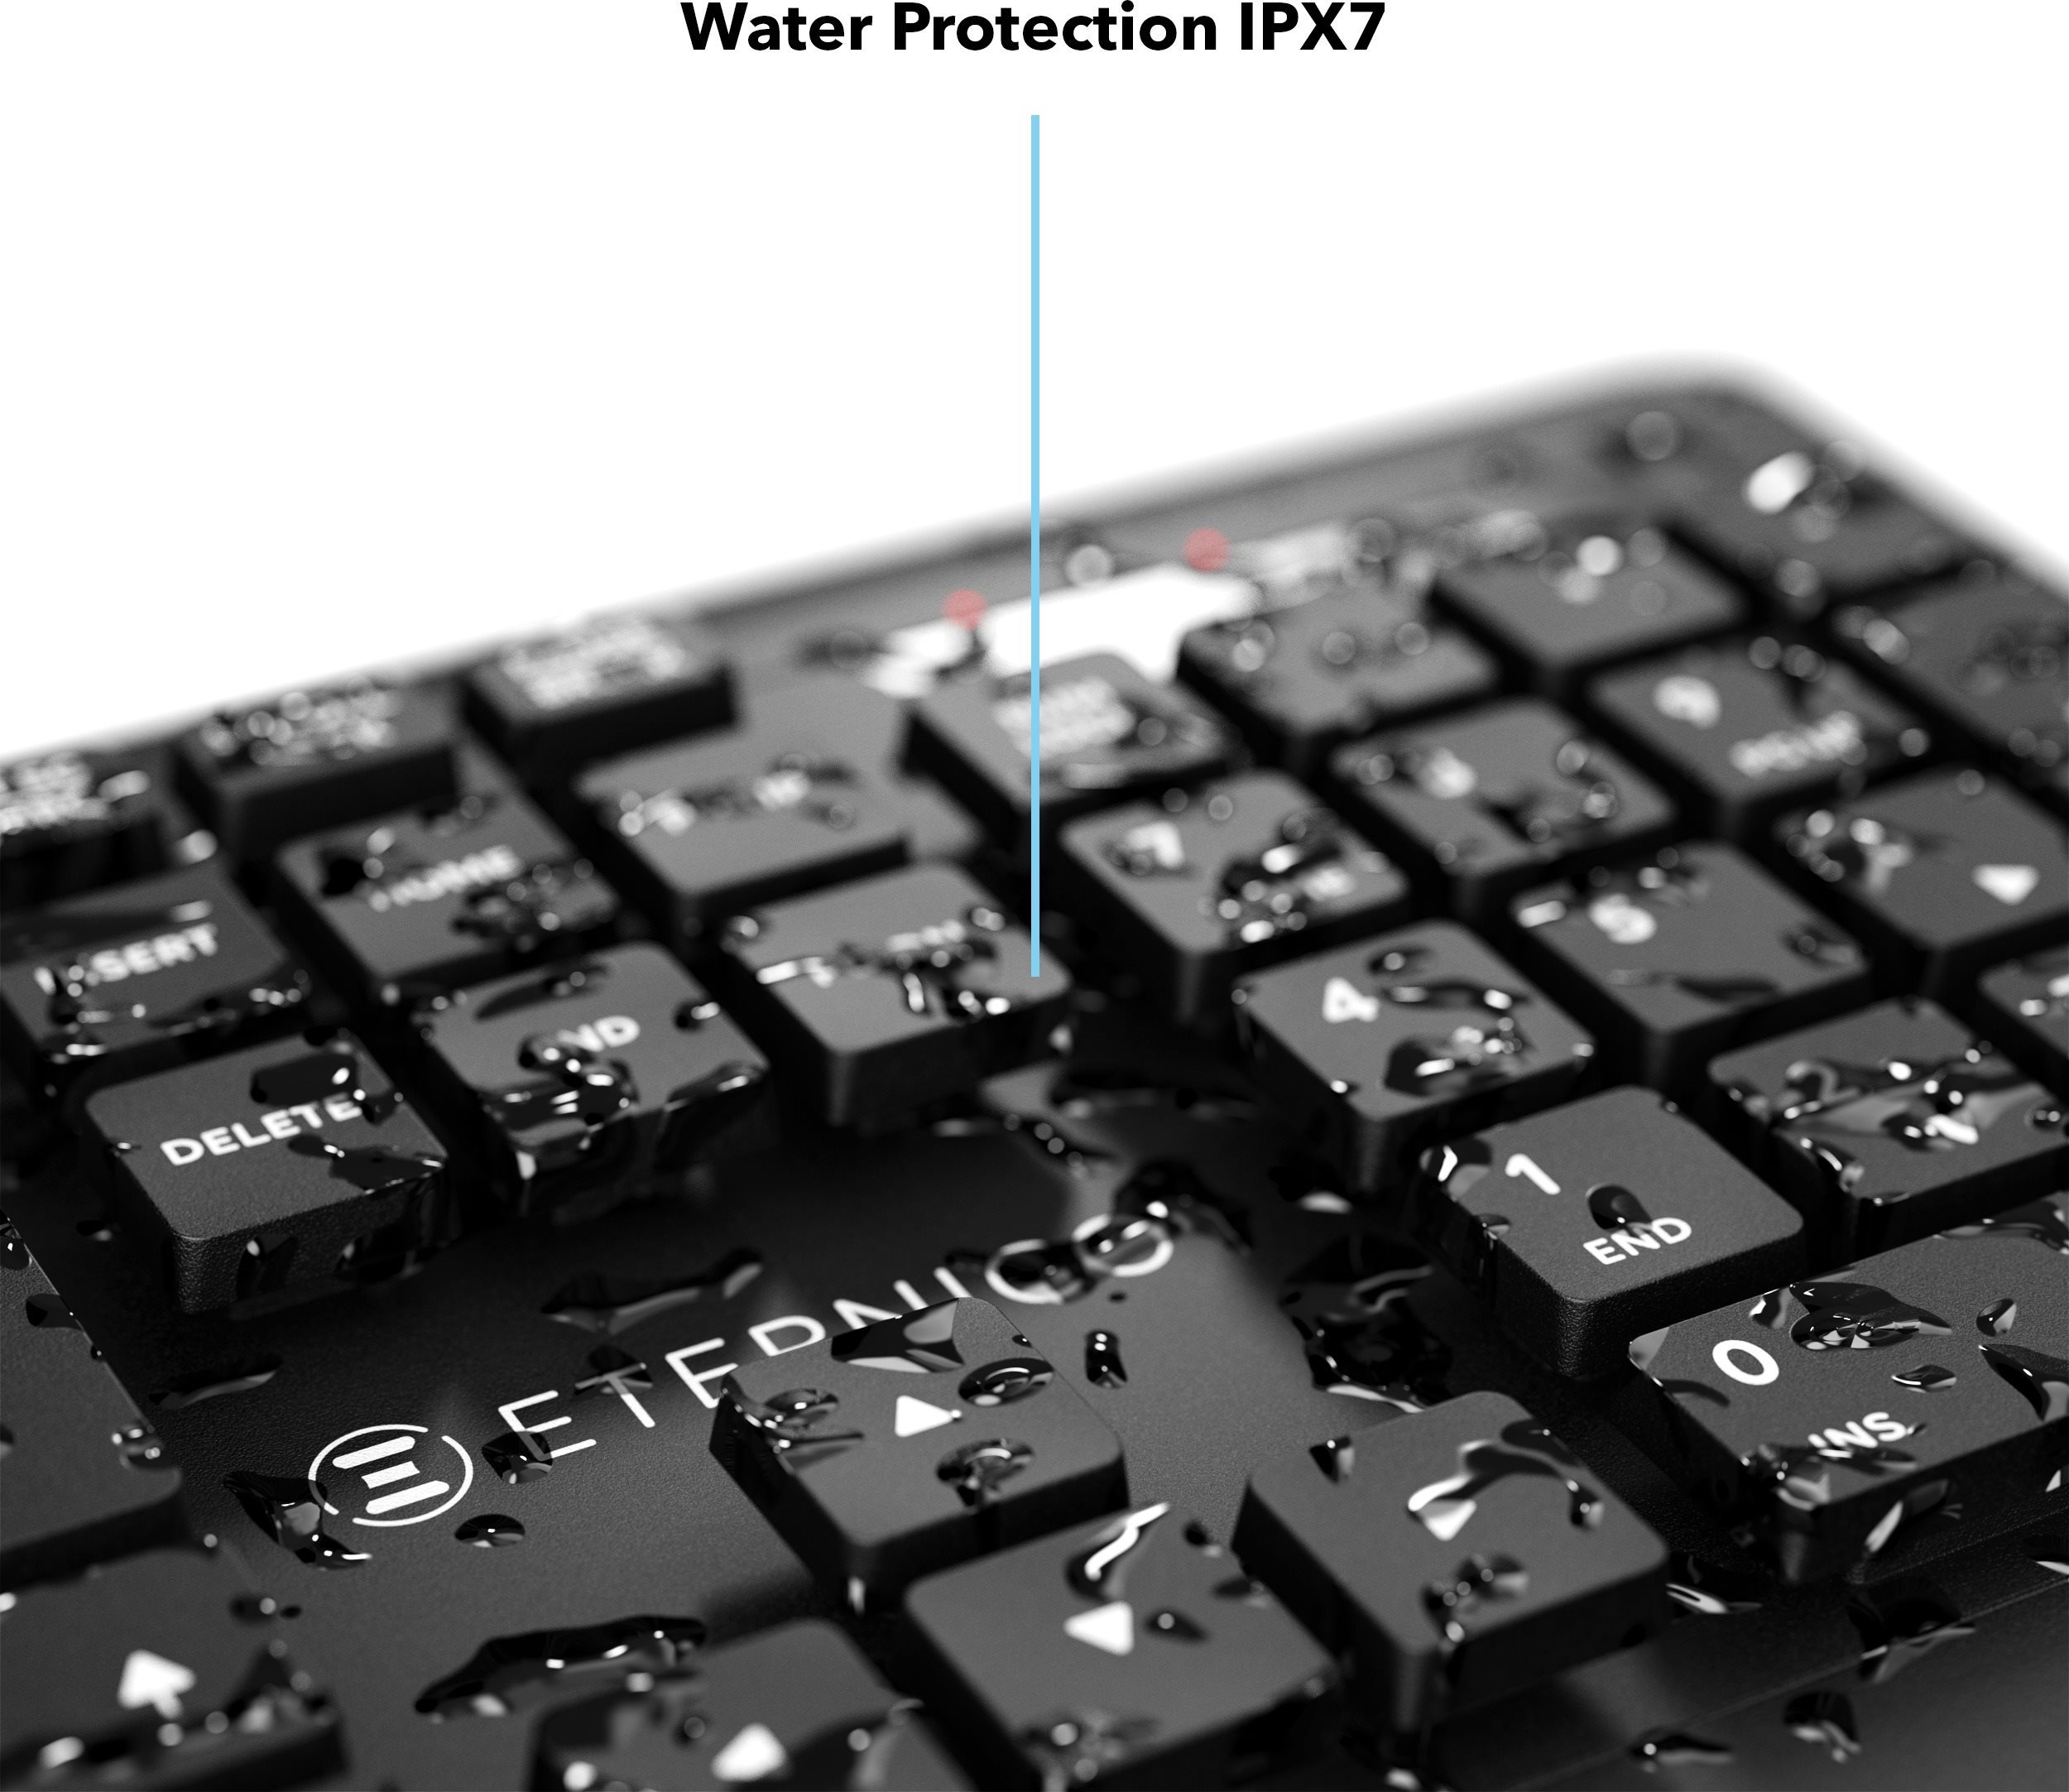 Tastatur Eternico Pro Keyboard Waterproof IPX7 KD2050 schwarz - CZ/SK ...